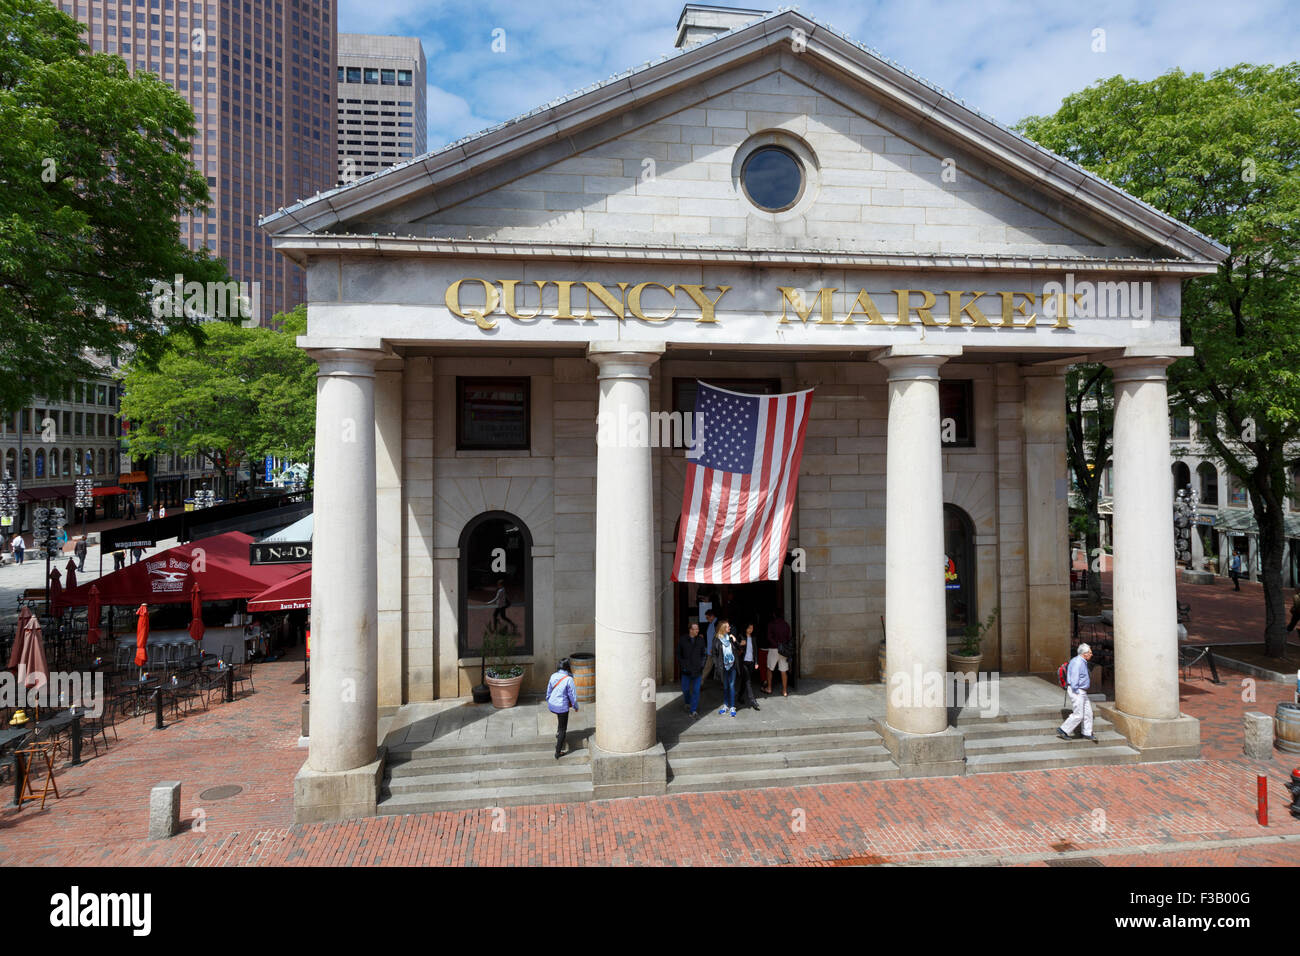 Quincy Market central market entrance grecian-doric columns downtown Boston, MA USA Stock Photo